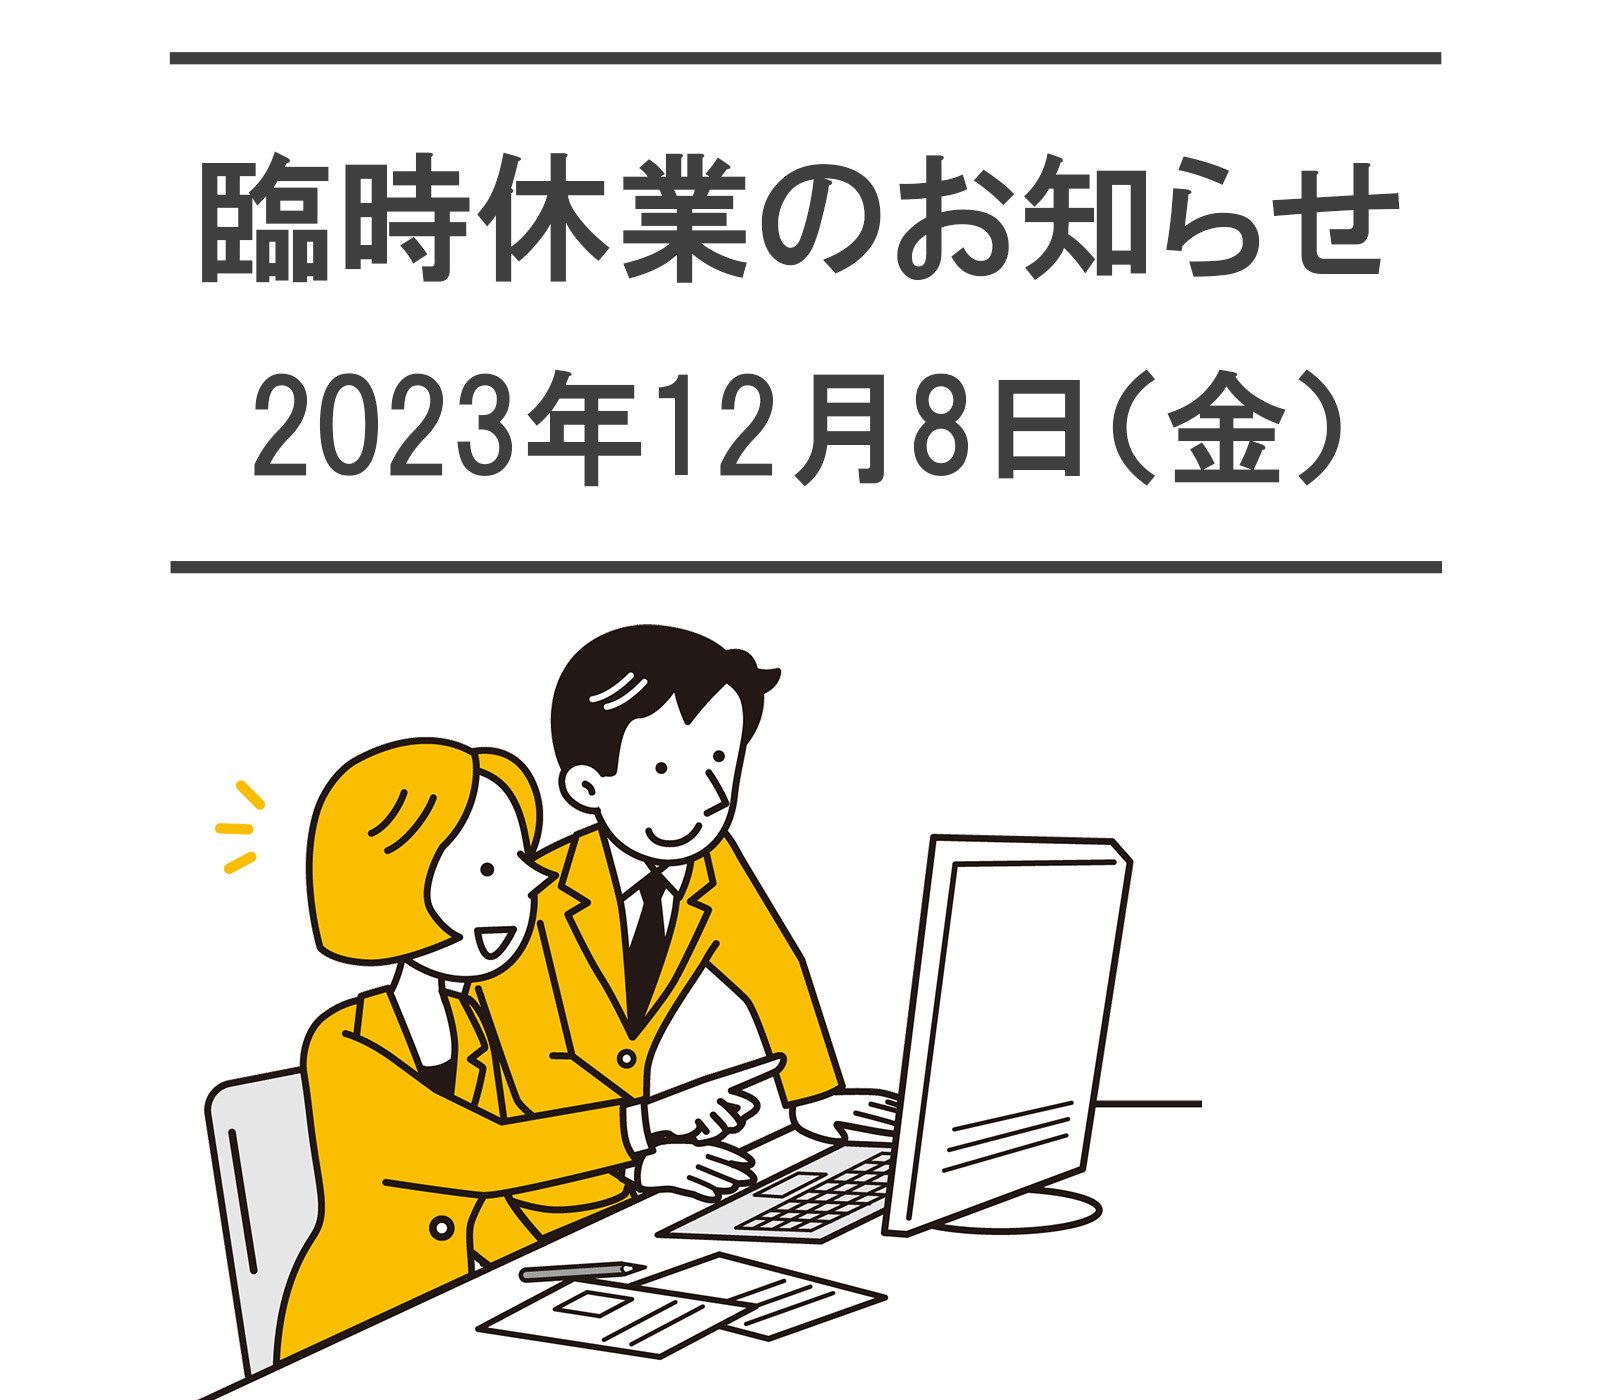 社内研修にともなう臨時休業のお知らせ【2023年12月8日(金)】